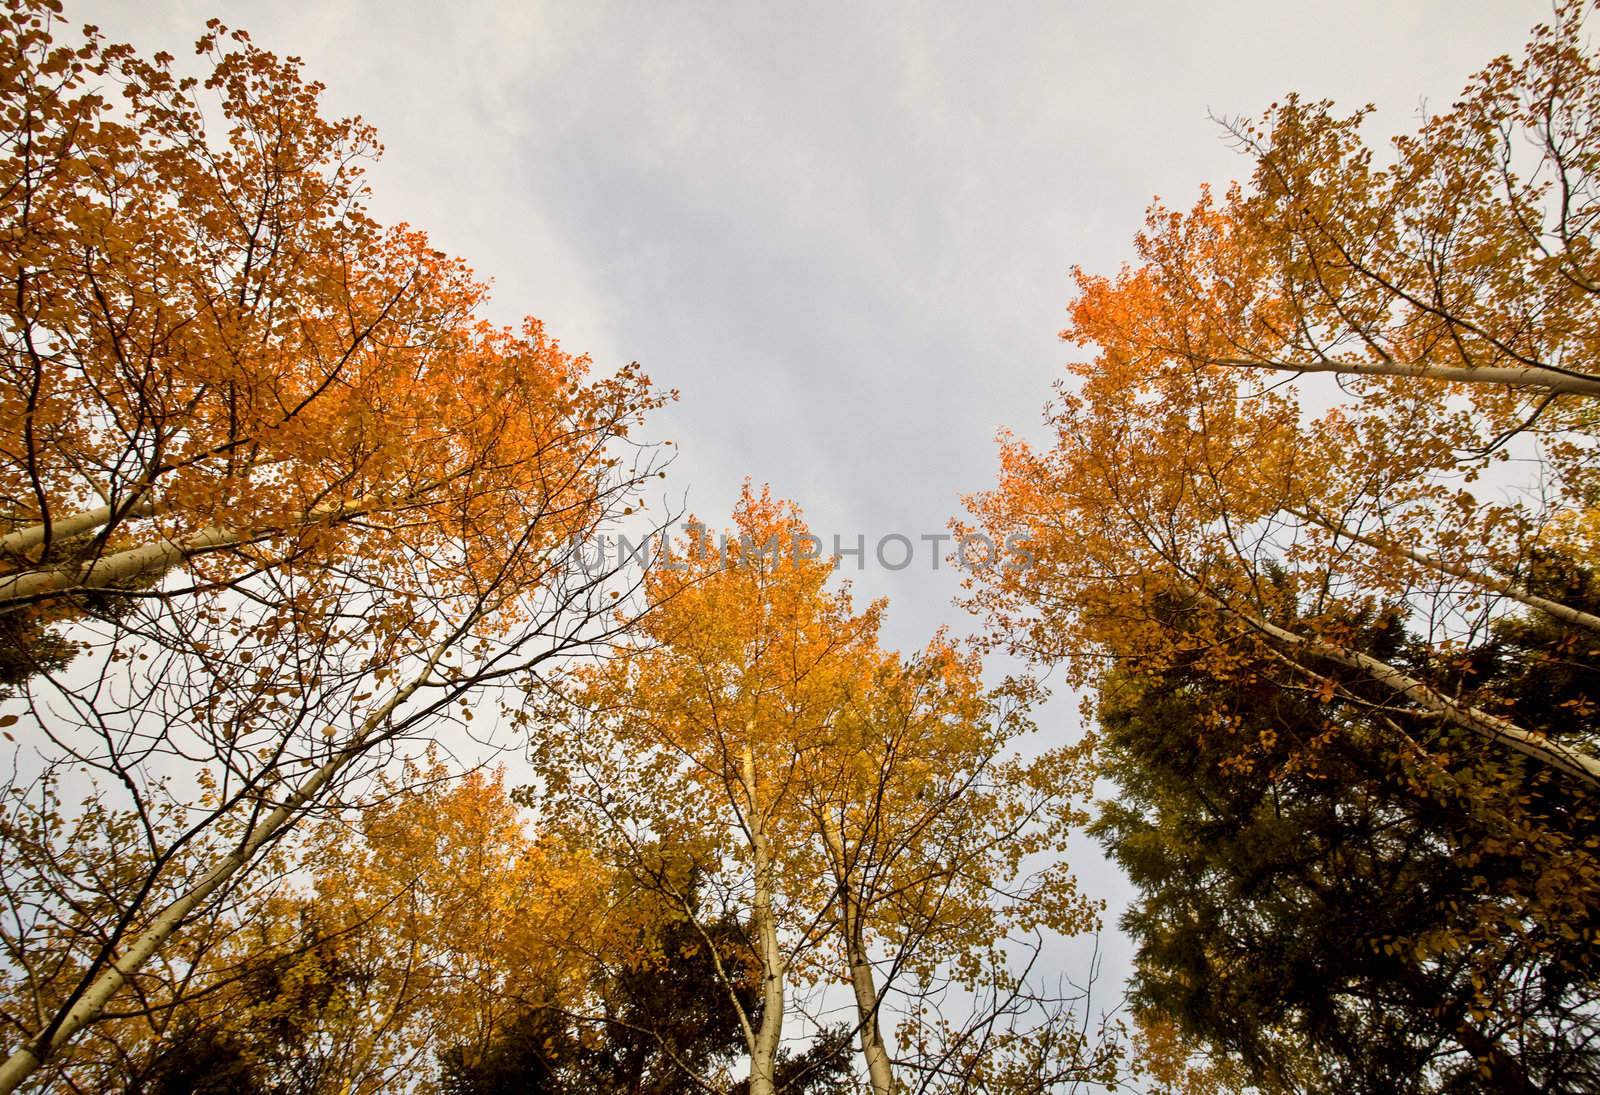 Fall Autumn colors trees Manitoba Canada